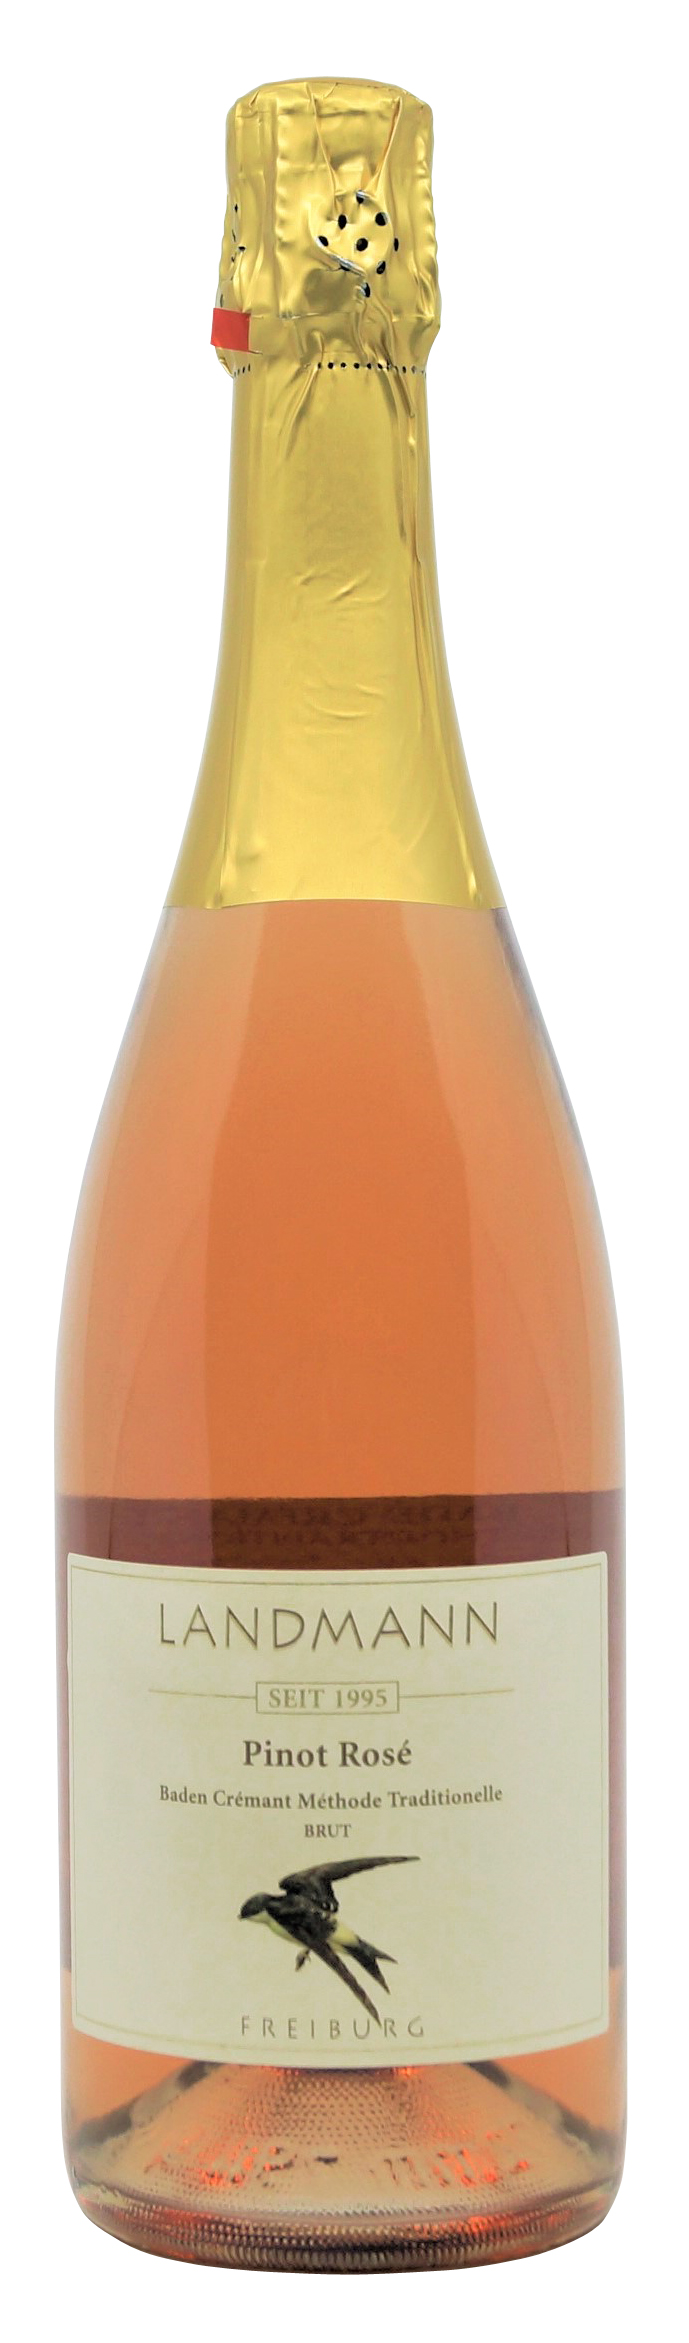 Pinot Rosé Brut Baden vom Weingut Landmann aus Waltershofen, 0,75 l Flasche (19,87 €/Liter)